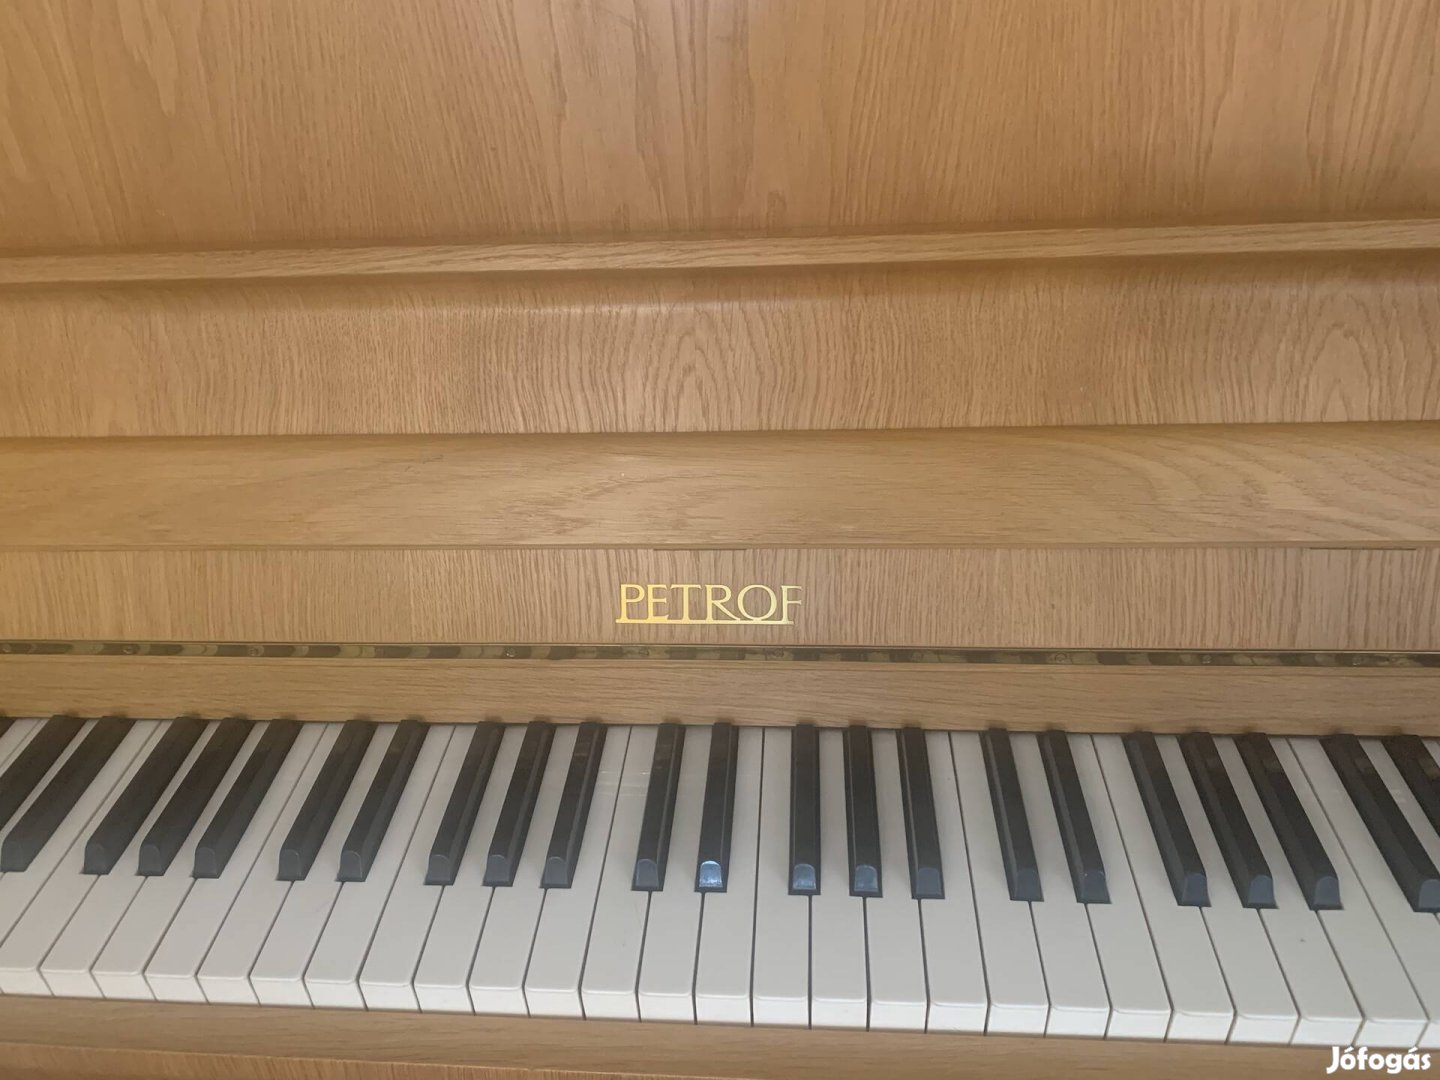 Petrof pianinó újszerű